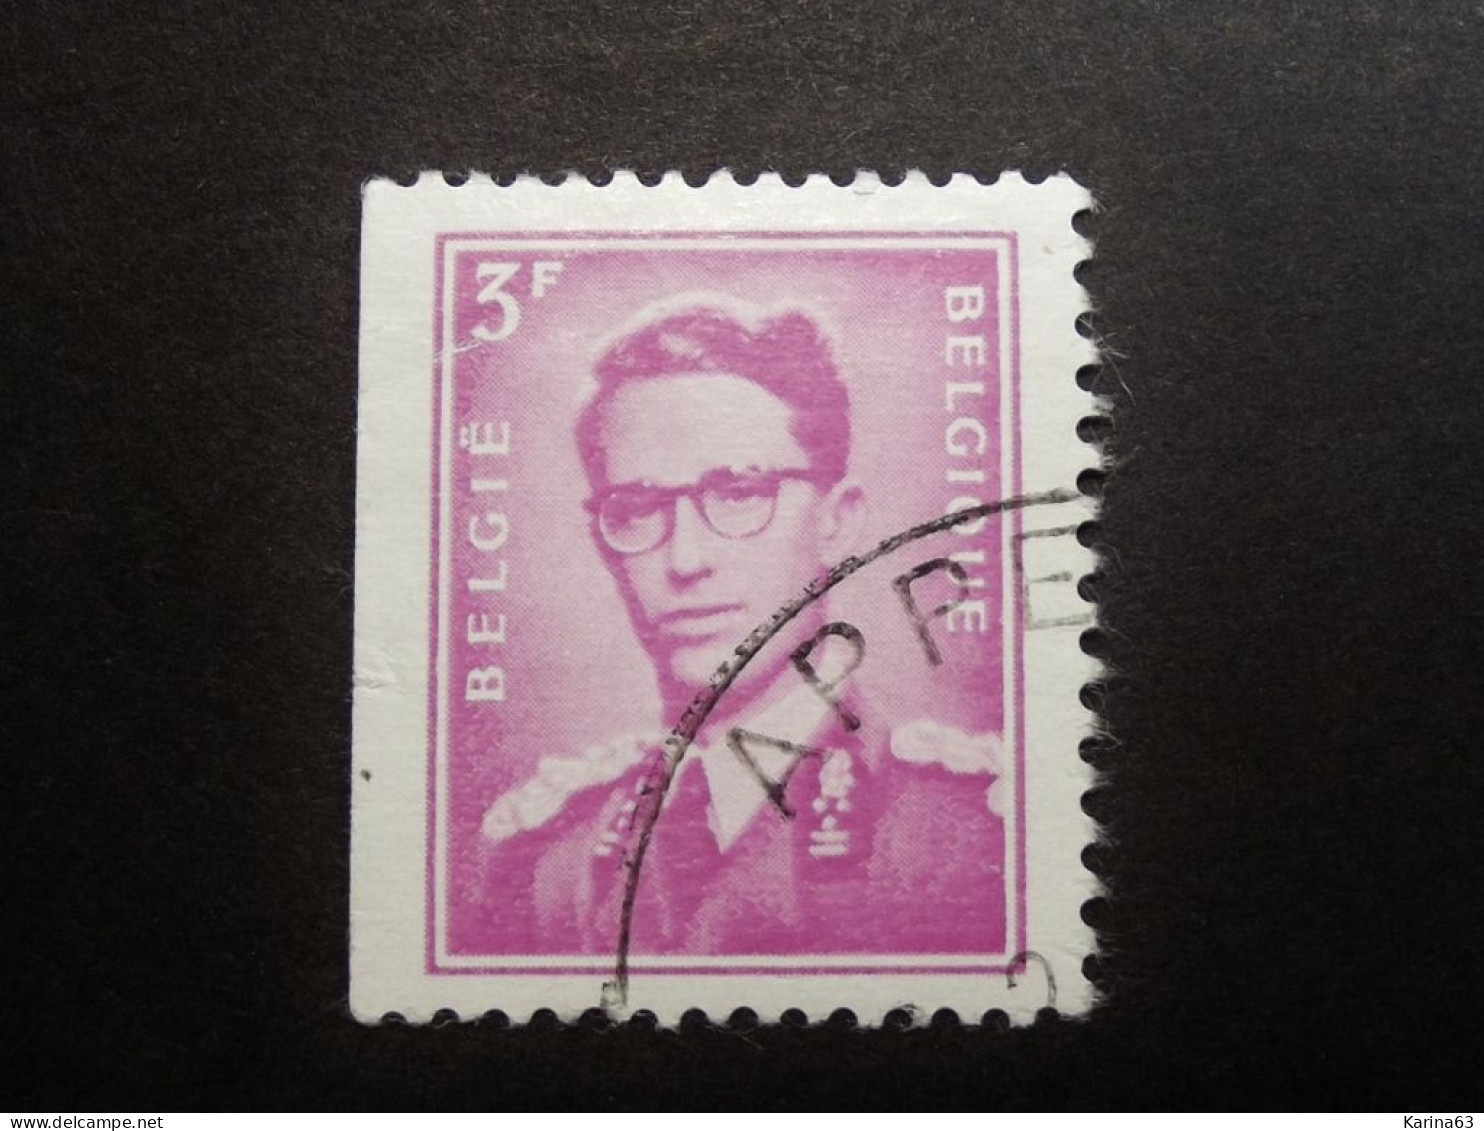 Belgie Belgique - 1958 -  OPB/COB  N° 1067 - 3 F  - APPELS - Used Stamps